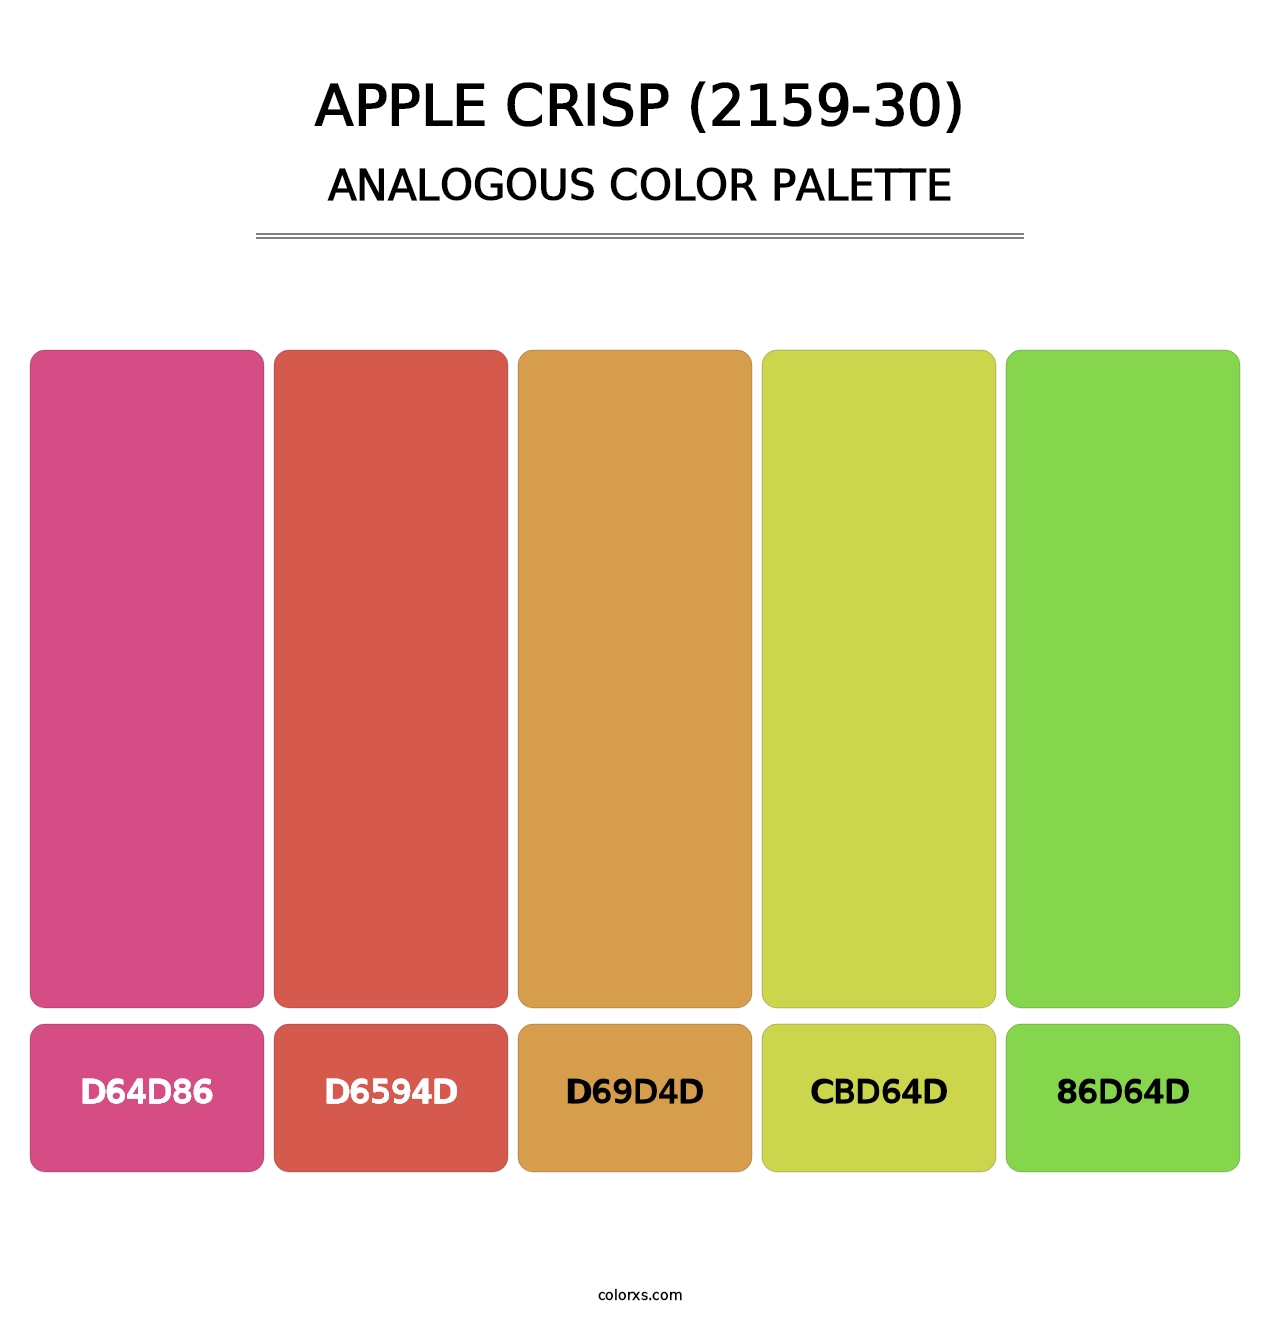 Apple Crisp (2159-30) - Analogous Color Palette